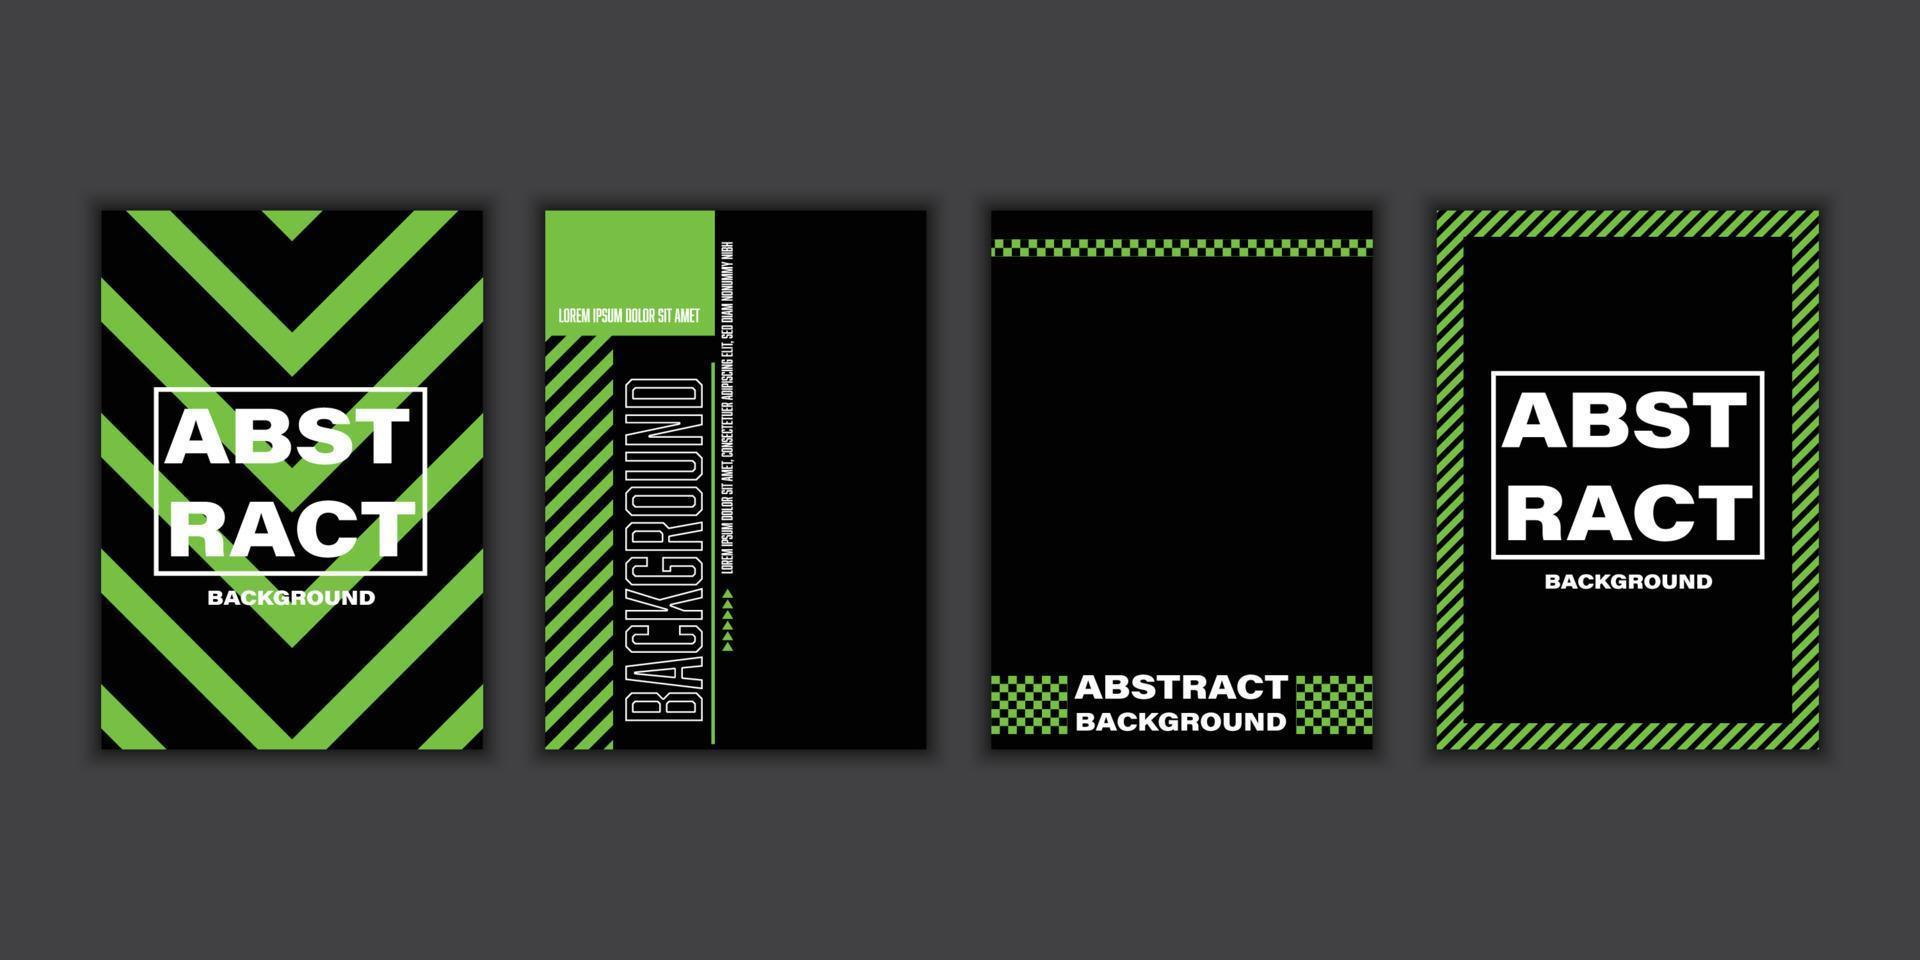 Vektor grüner und schwarzer Textureffekt, abstrakter Grunge-Hintergrund.